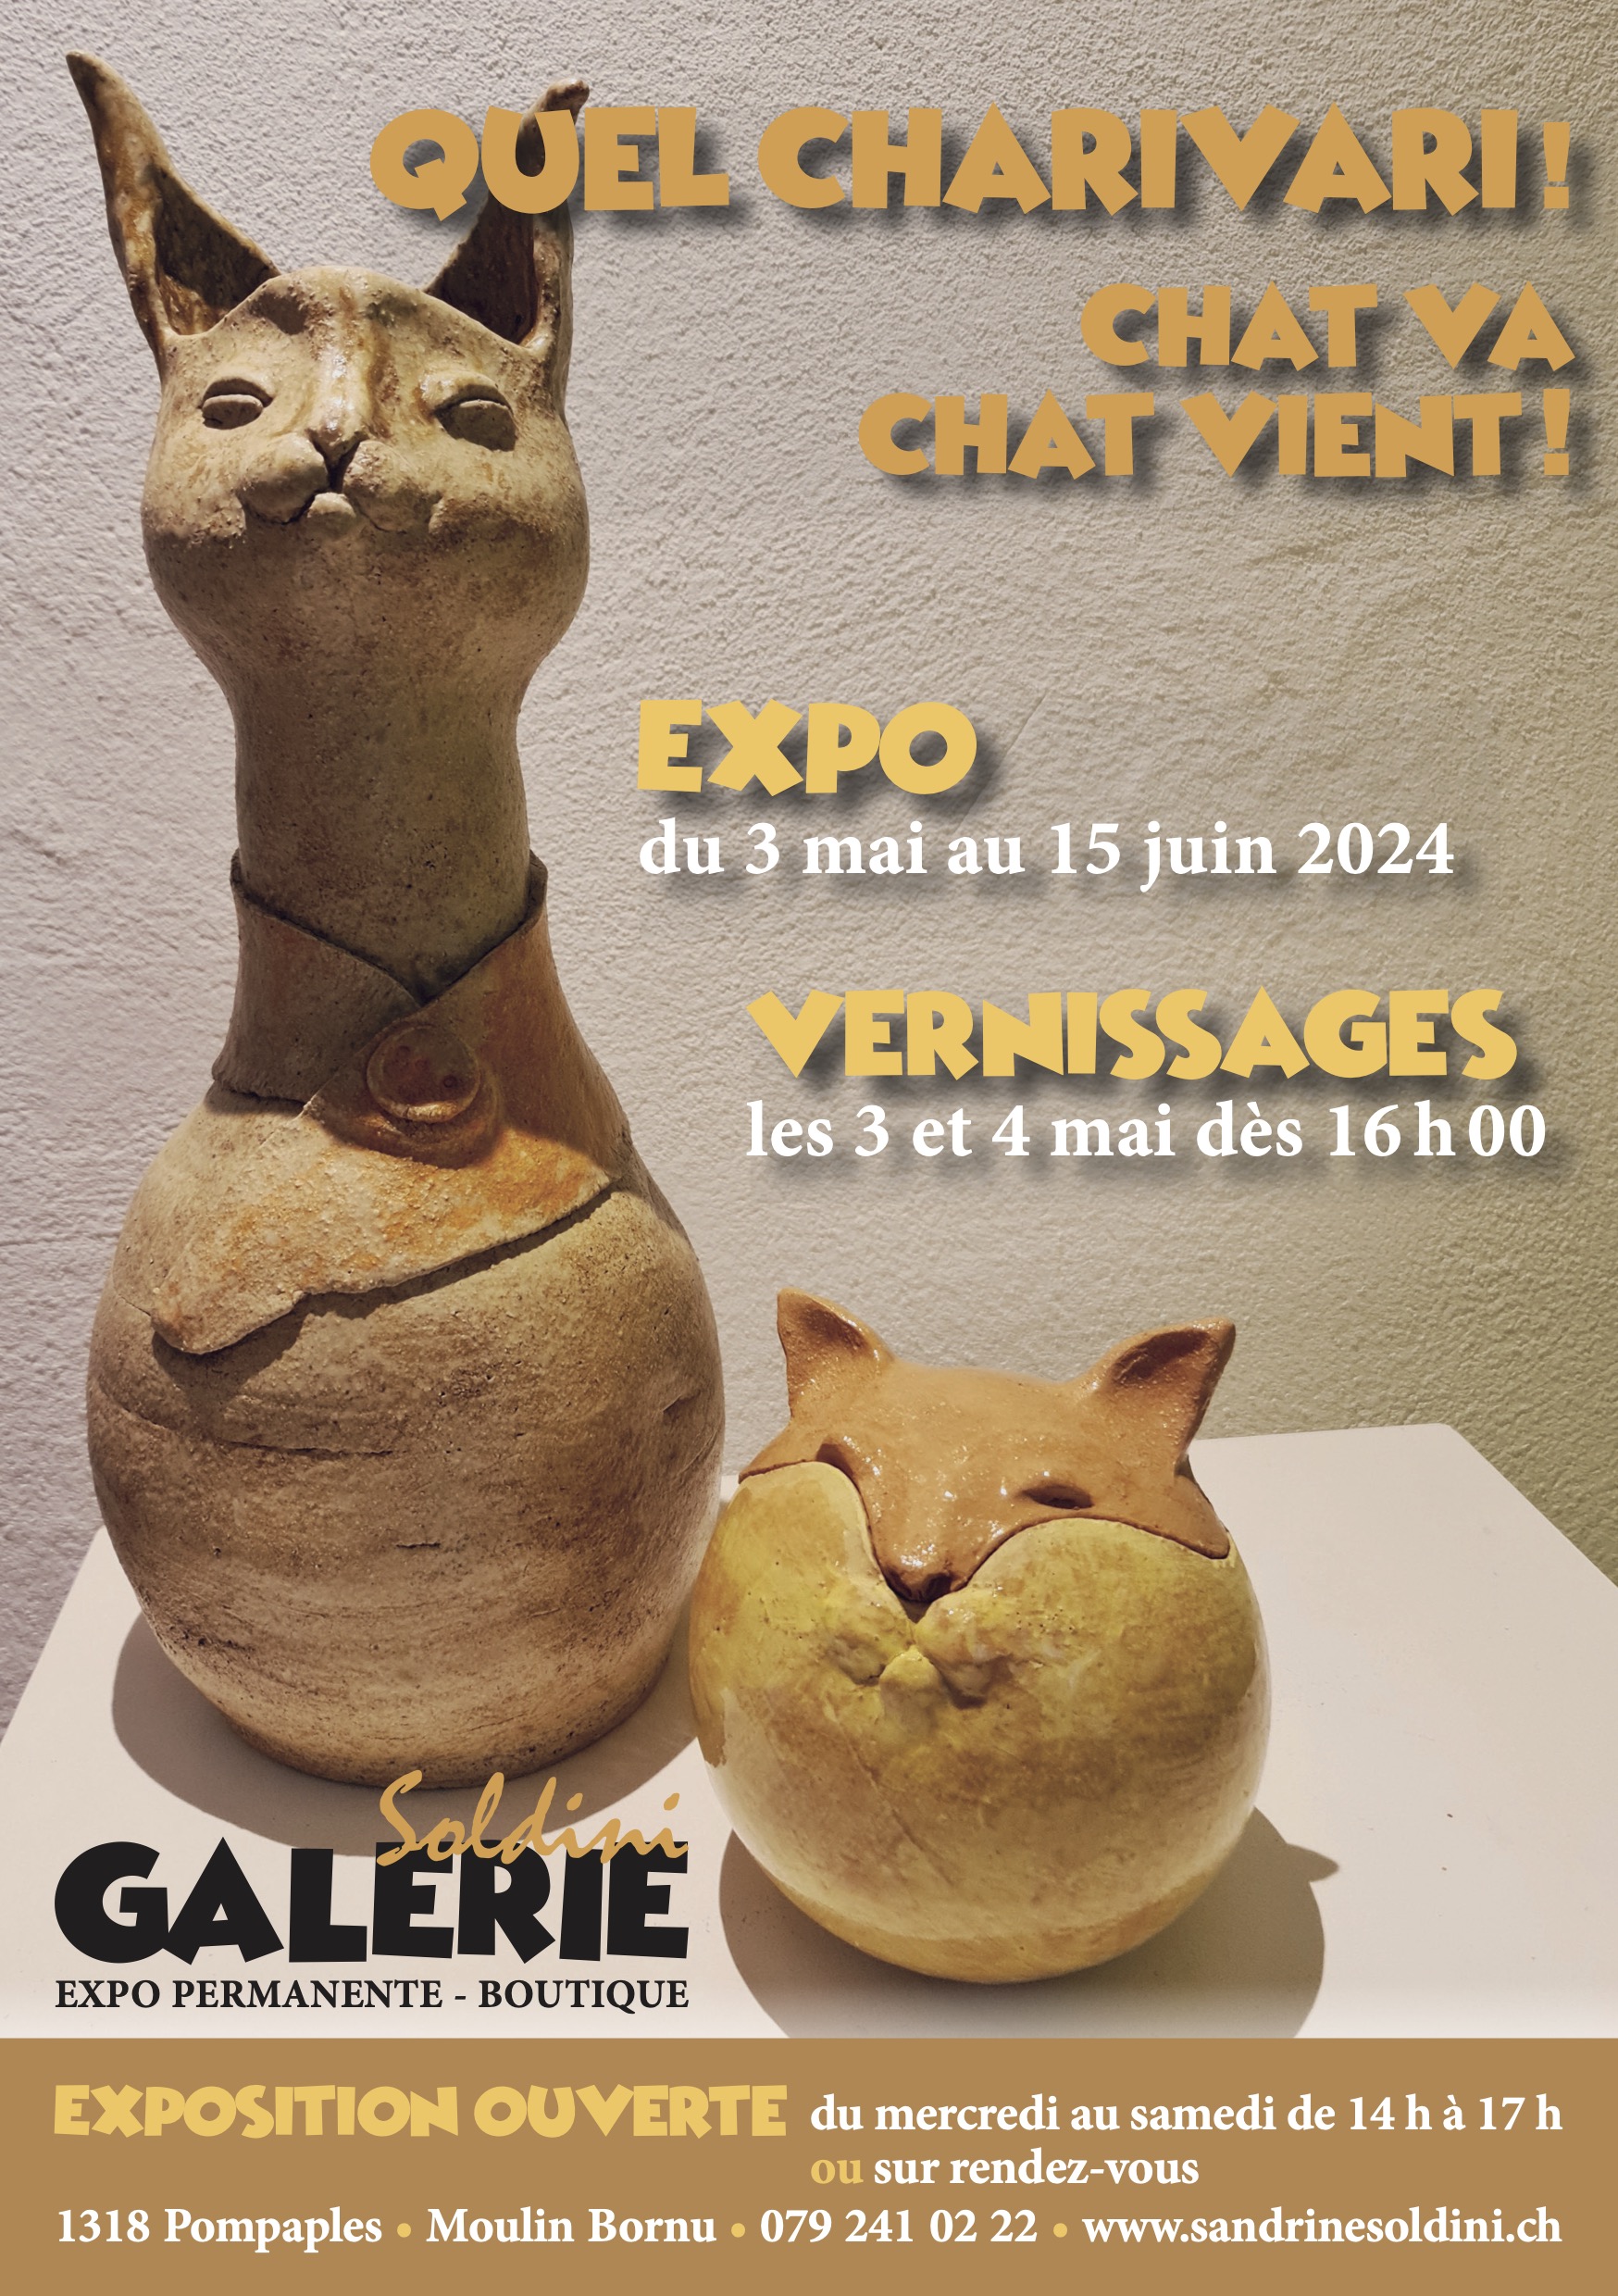 Exposition « Quel Charivari! Chat va chat vient! » du 4 mai au 15 juin